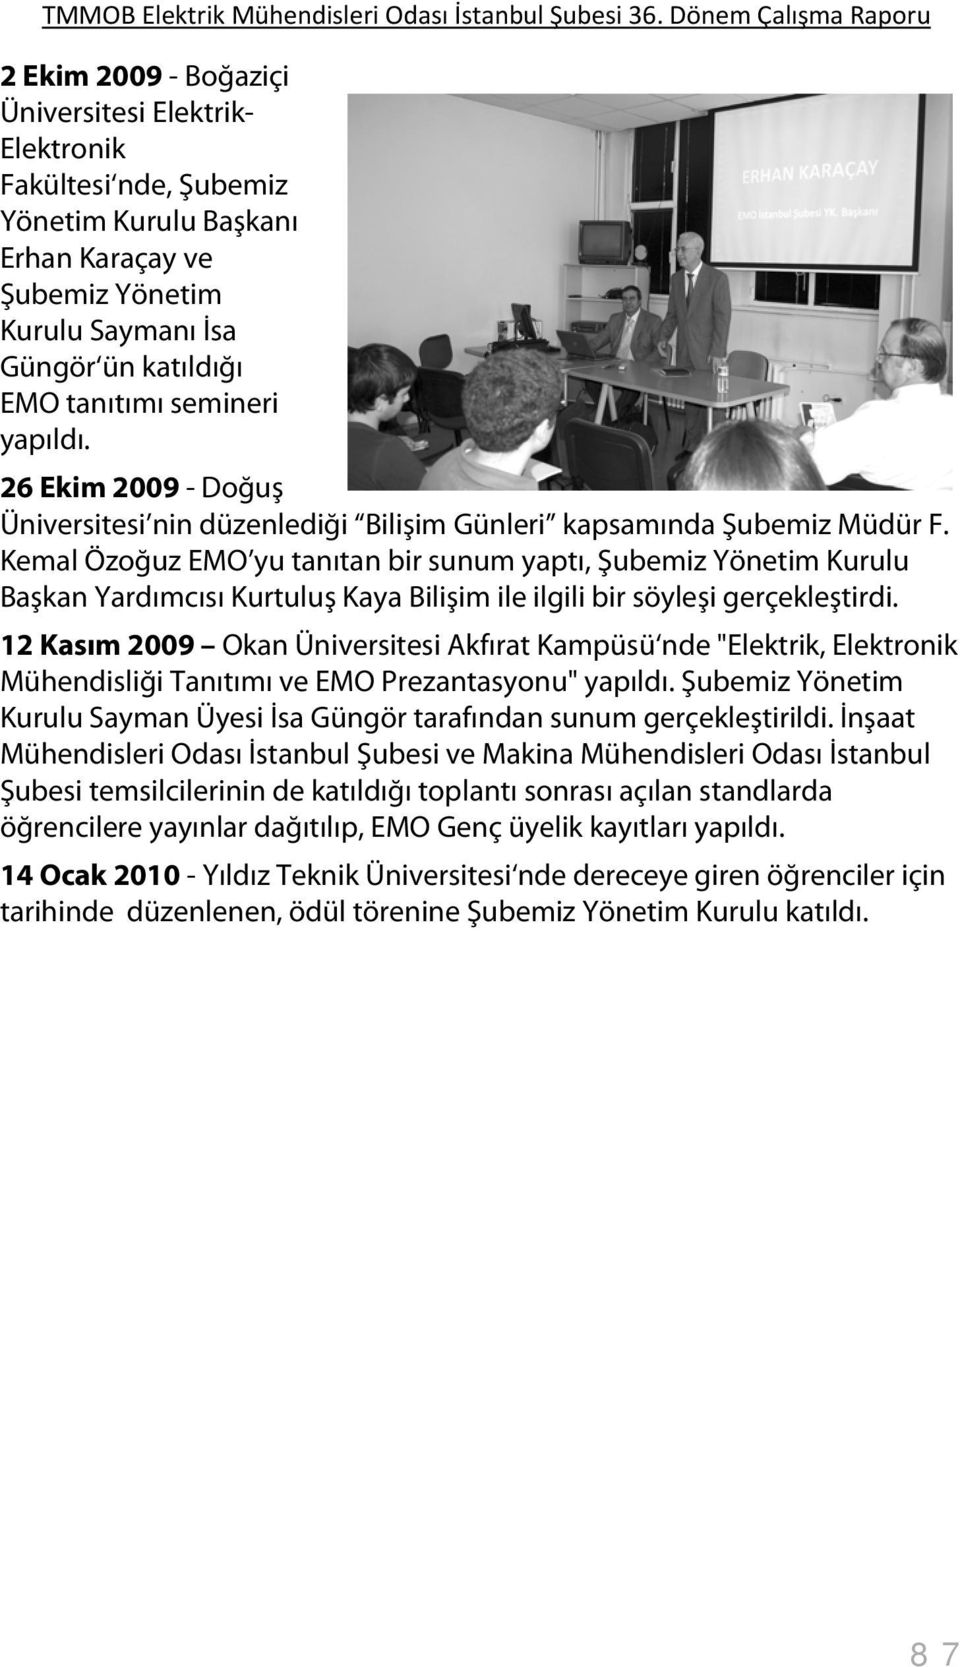 Kemal Özoğuz EMO yu tanıtan bir sunum yaptı, Şubemiz Yönetim Kurulu Başkan Yardımcısı Kurtuluş Kaya Bilişim ile ilgili bir söyleşi gerçekleştirdi.